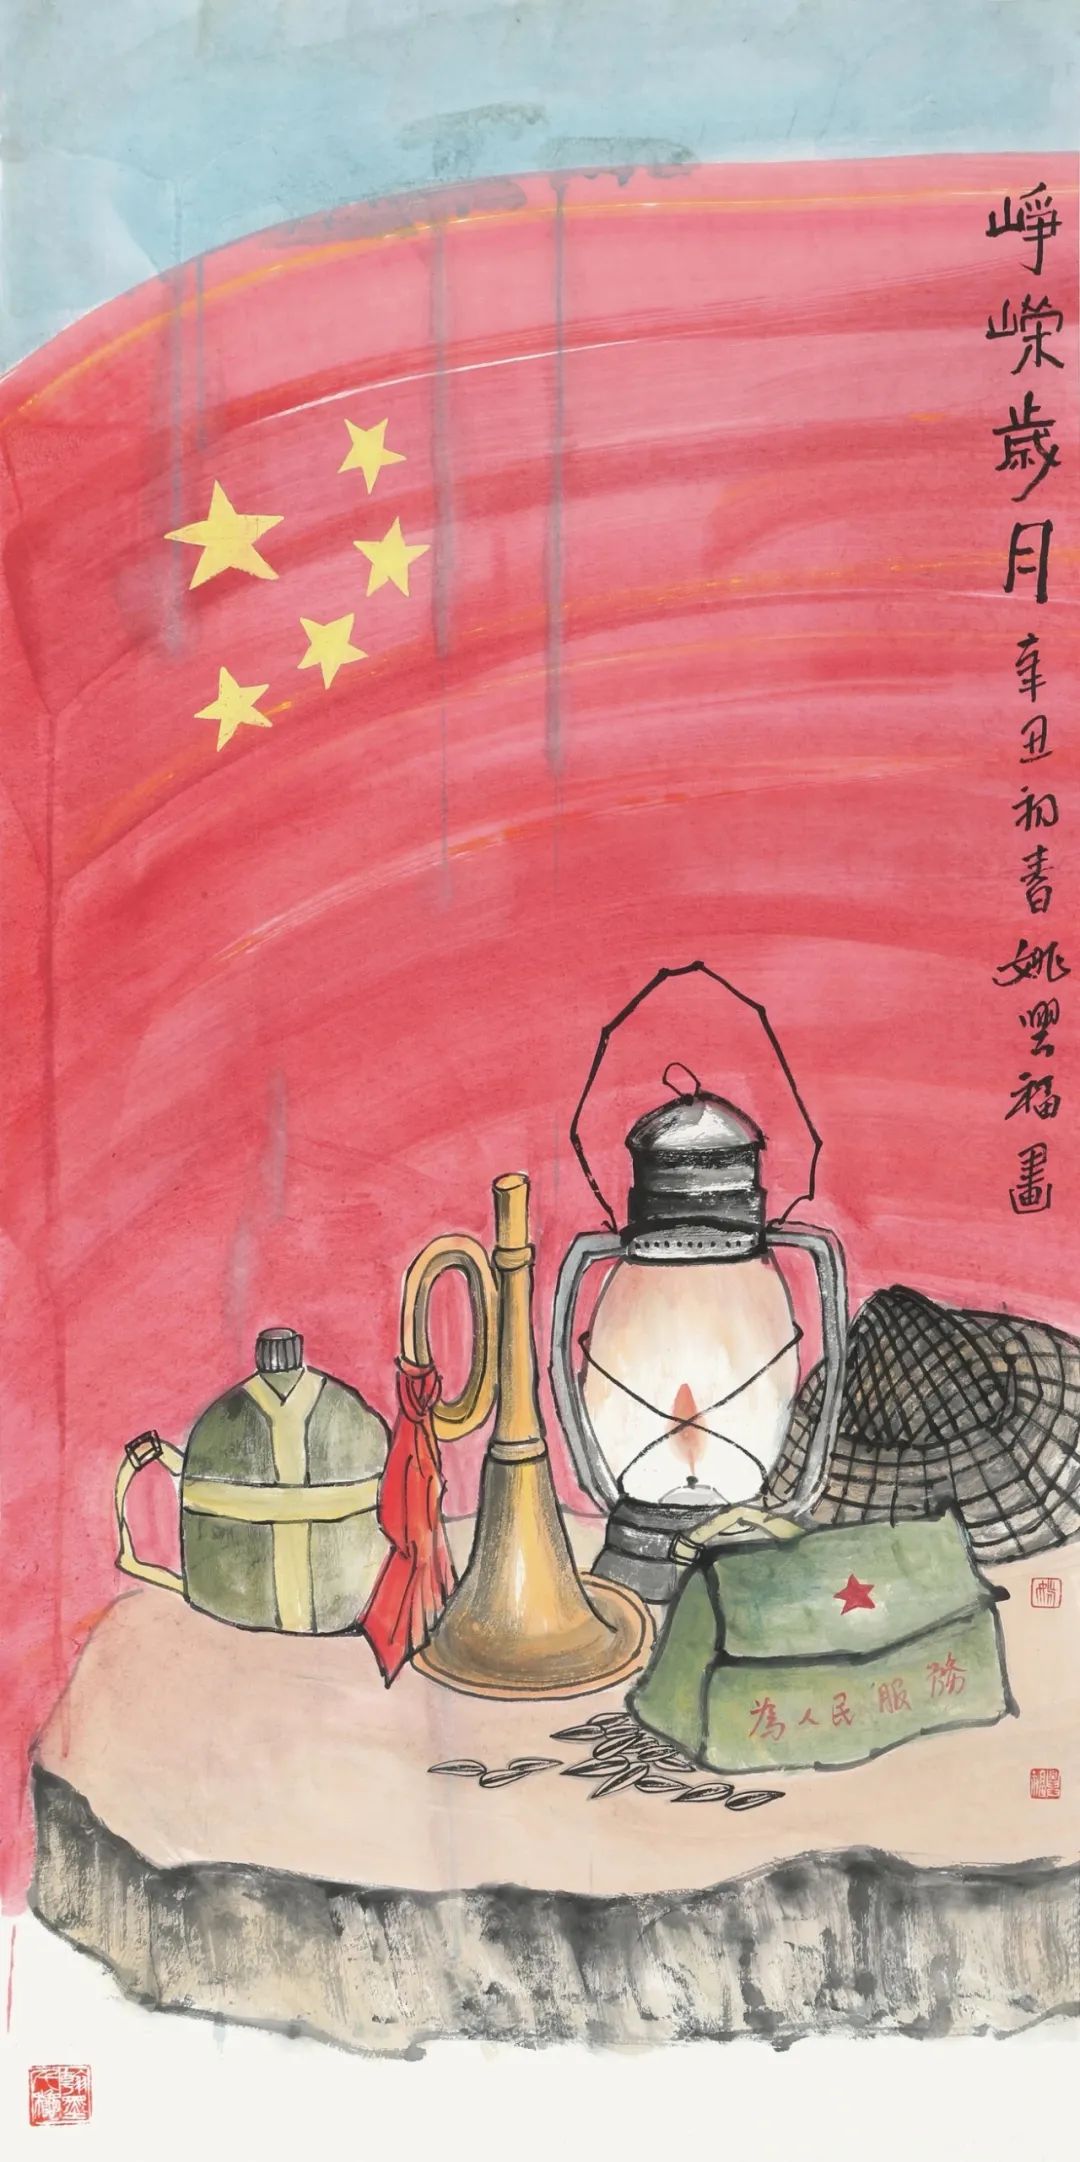 九州上下歌盛世 万点丹青绘宏图——福州民盟庆祝中国共产党成立100周年书画展